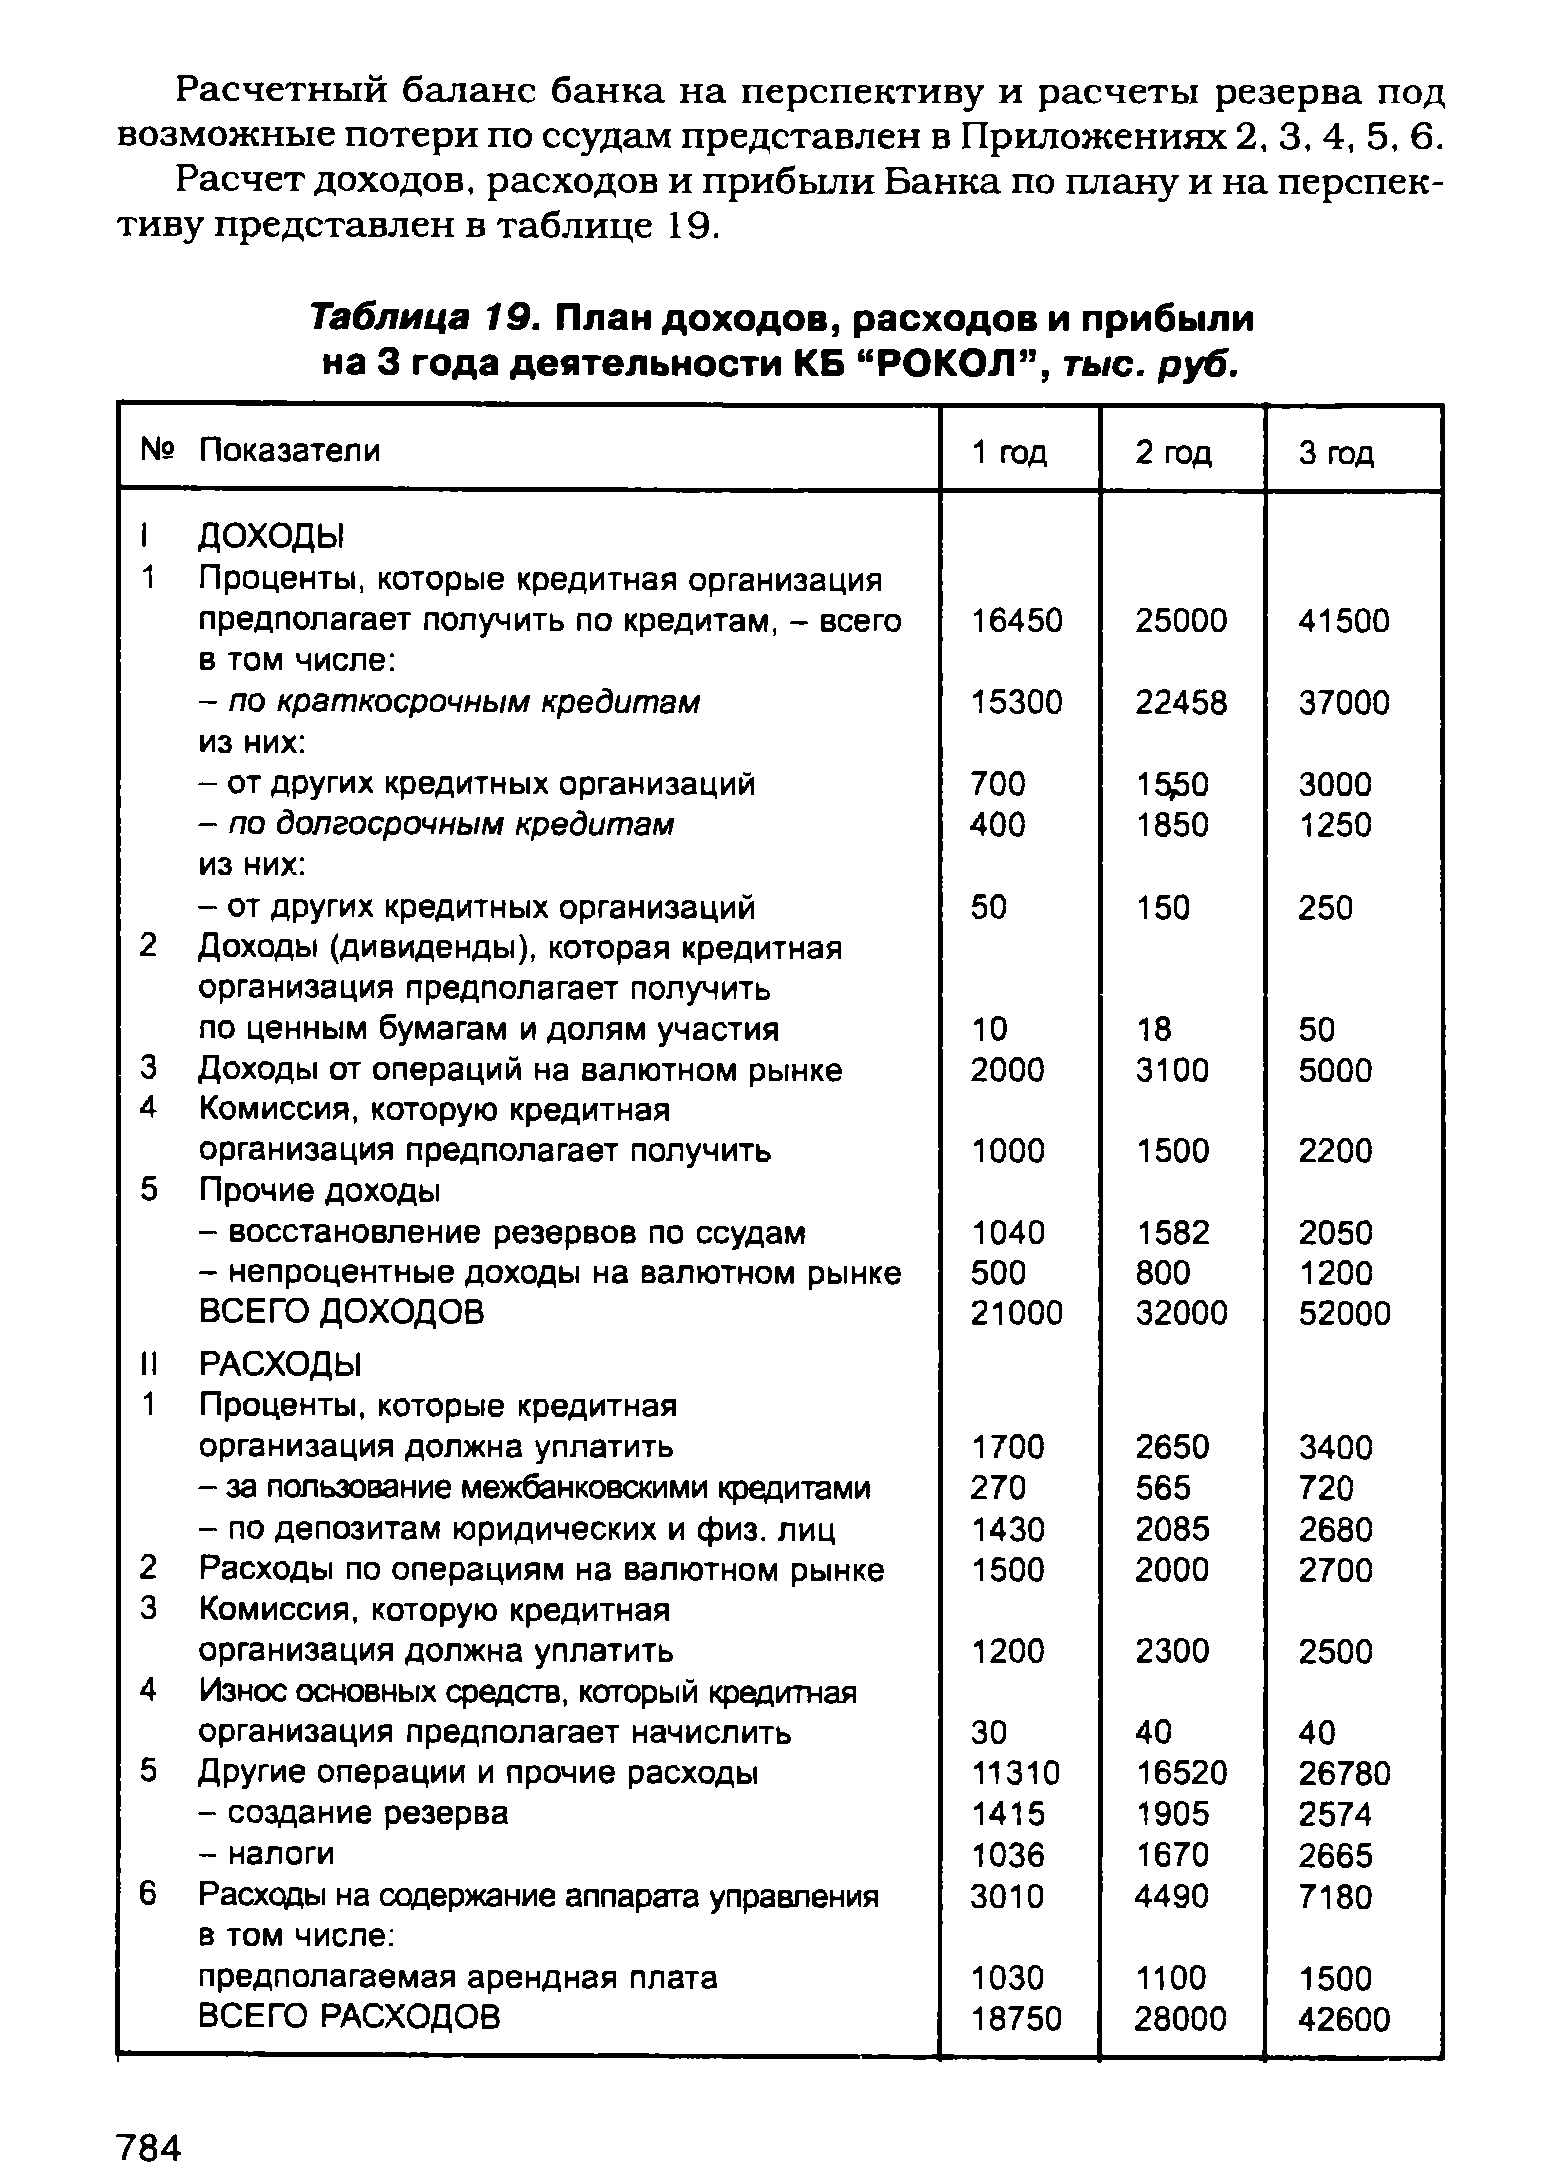 Таблица 19. План доходов, расходов и прибыли на 3 года деятельности КБ "РОКОЛ", тыс. руб.
